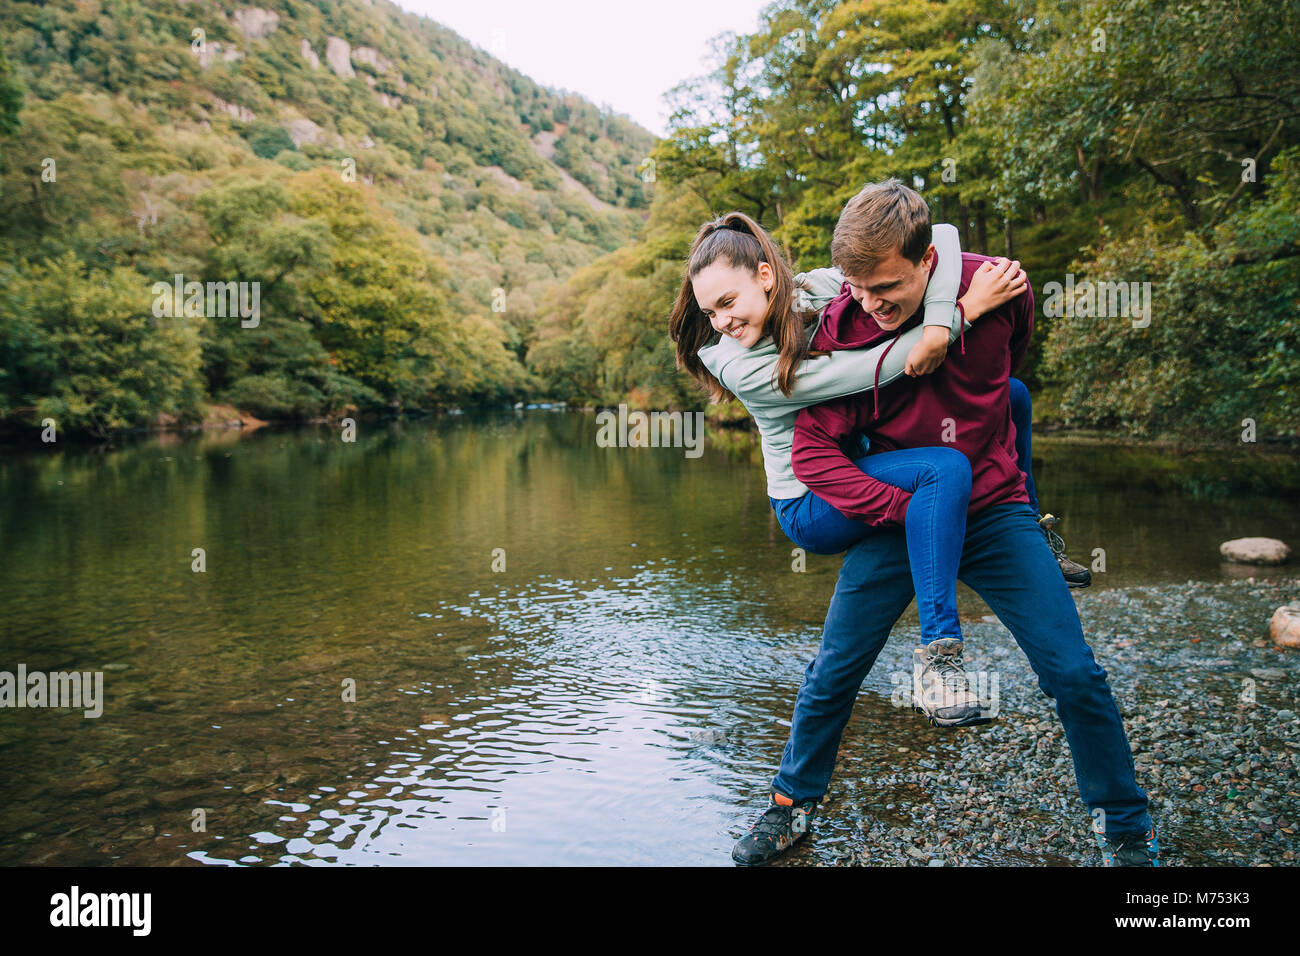 Ragazzo adolescente ha la sua sorella in una piggy back attesa e finge di buttarla in un lago mentre sono fuori escursionismo. Foto Stock